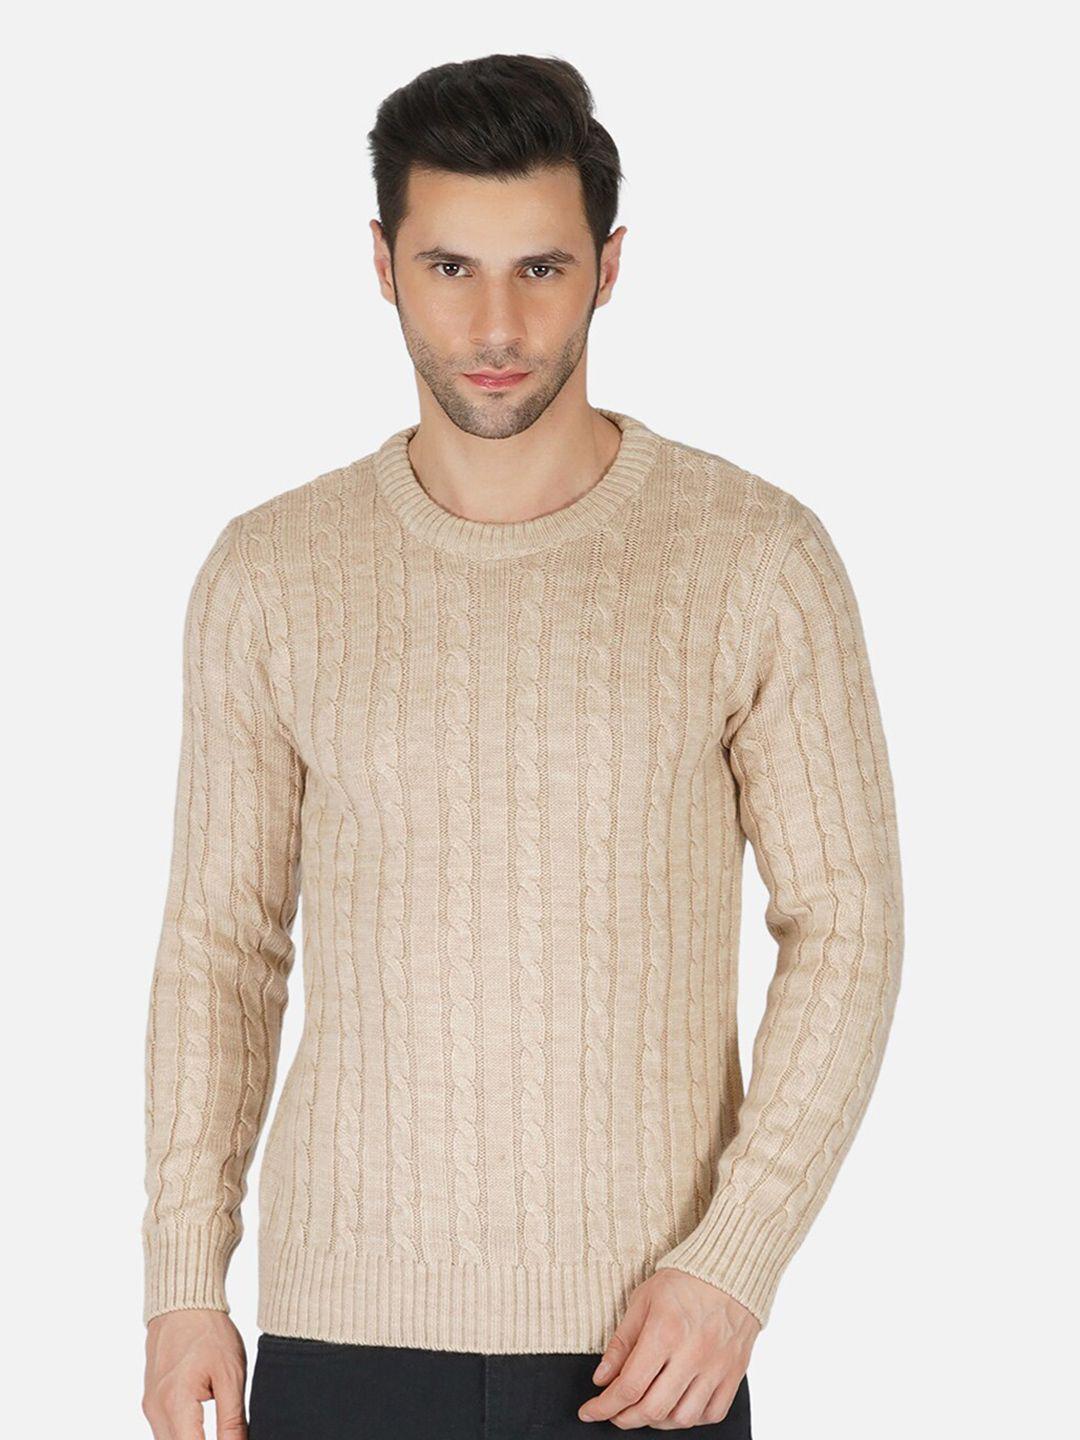 joe-hazel-men-beige-cable-knit-acrylic-pullover